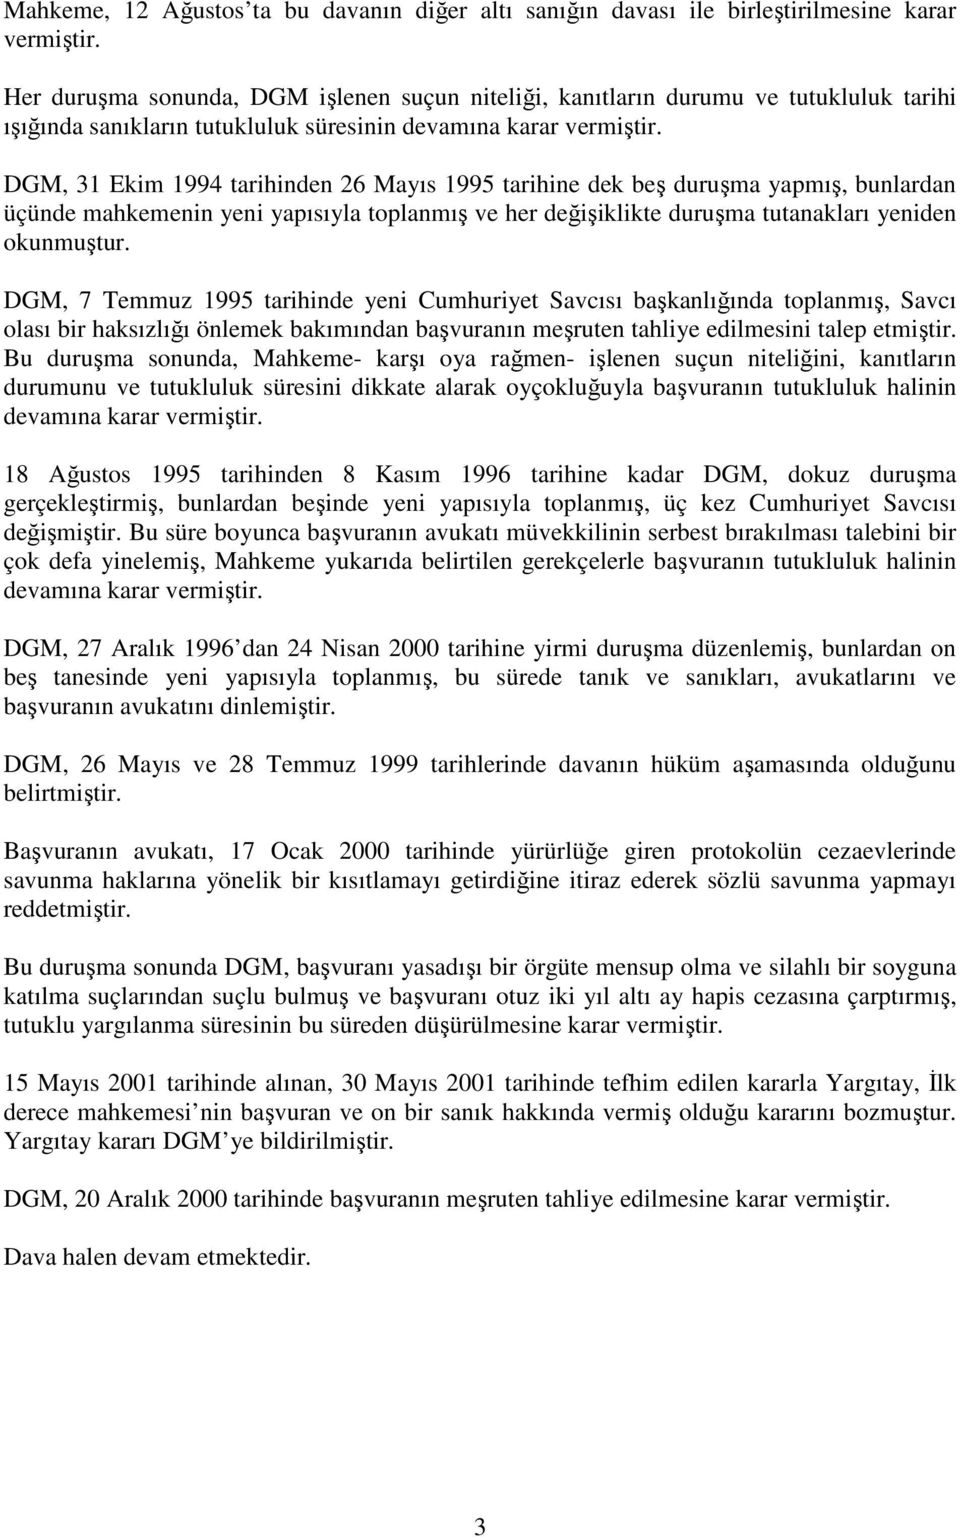 DGM, 31 Ekim 1994 tarihinden 26 Mayıs 1995 tarihine dek beş duruşma yapmış, bunlardan üçünde mahkemenin yeni yapısıyla toplanmış ve her değişiklikte duruşma tutanakları yeniden okunmuştur.